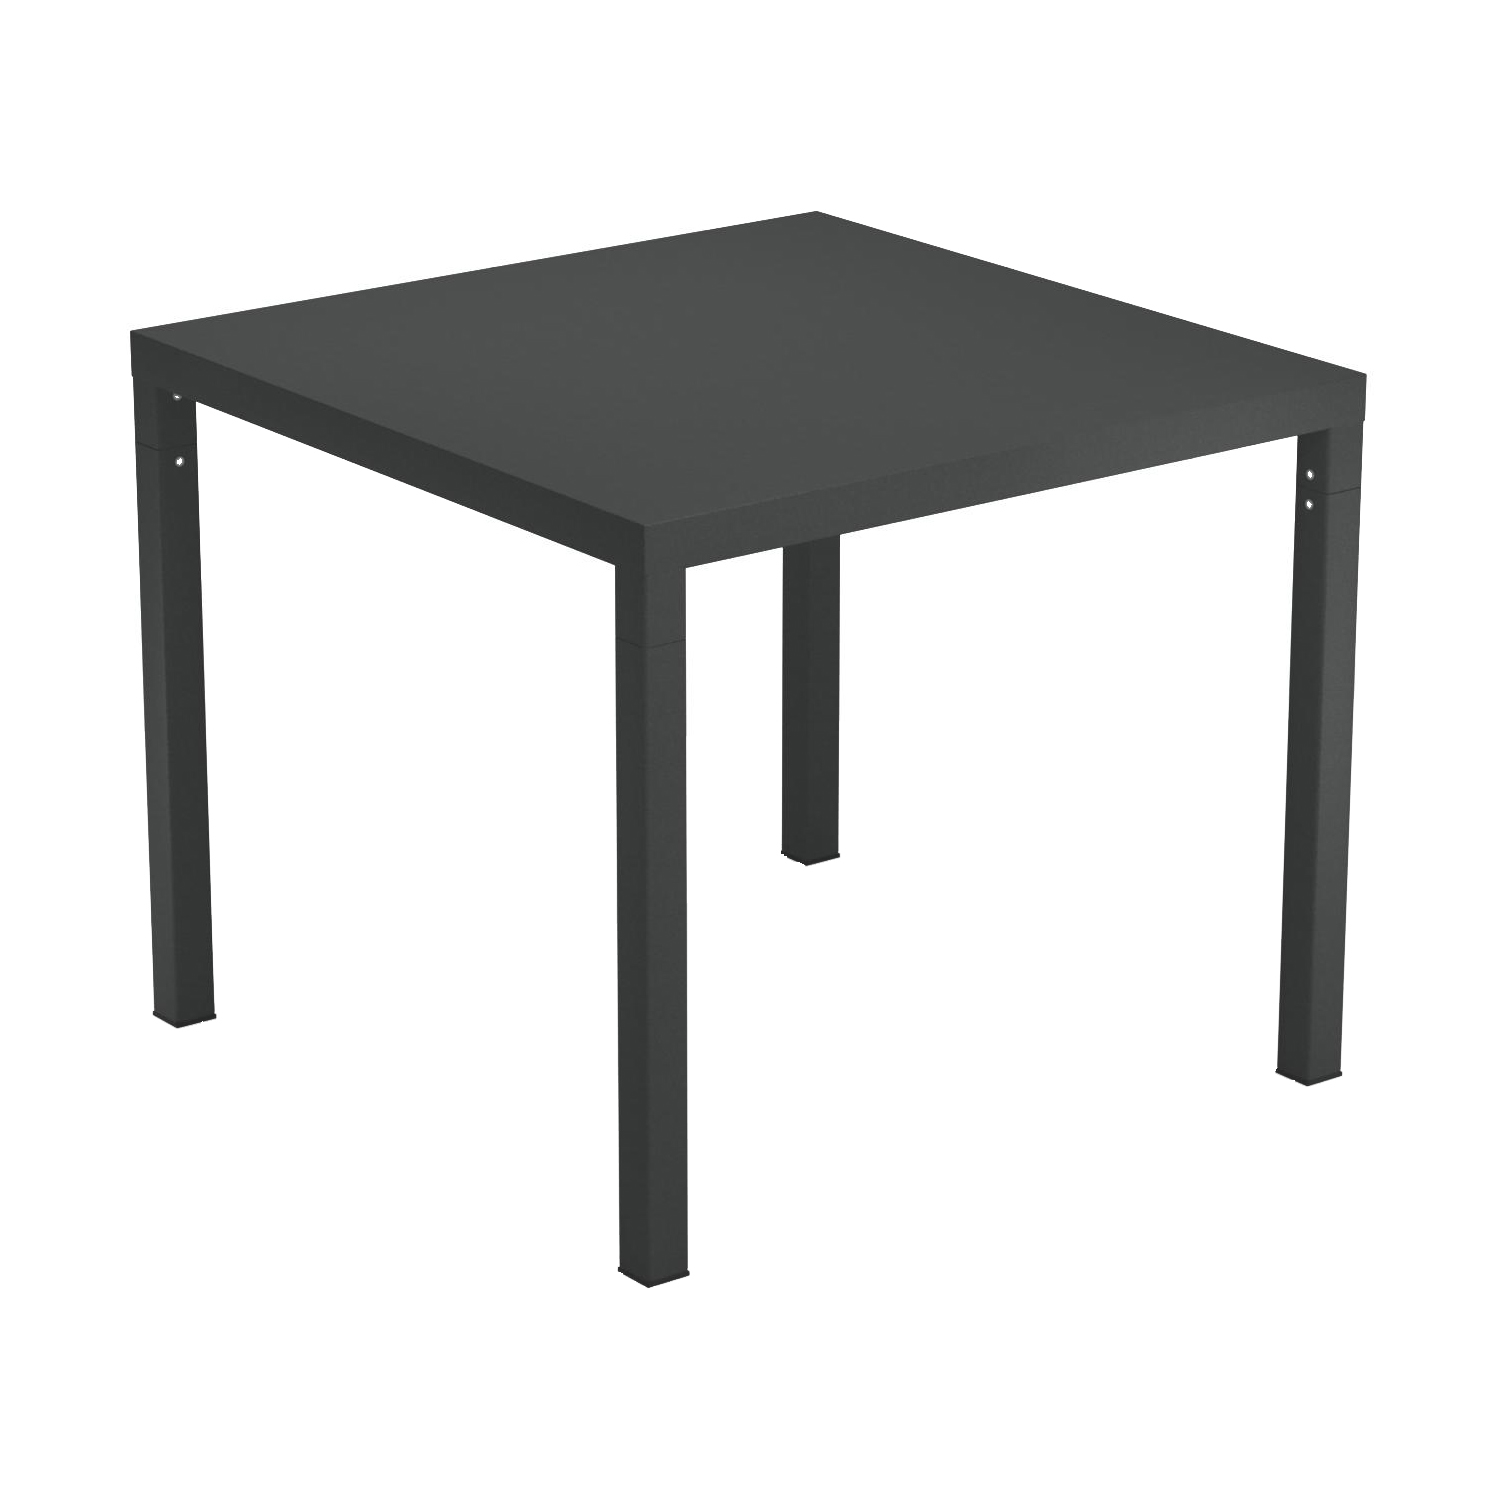 emu - Nova Garden Table 90x90cm - antikeisen/pulverbeschichtet/LxBxH 90x90x74cm